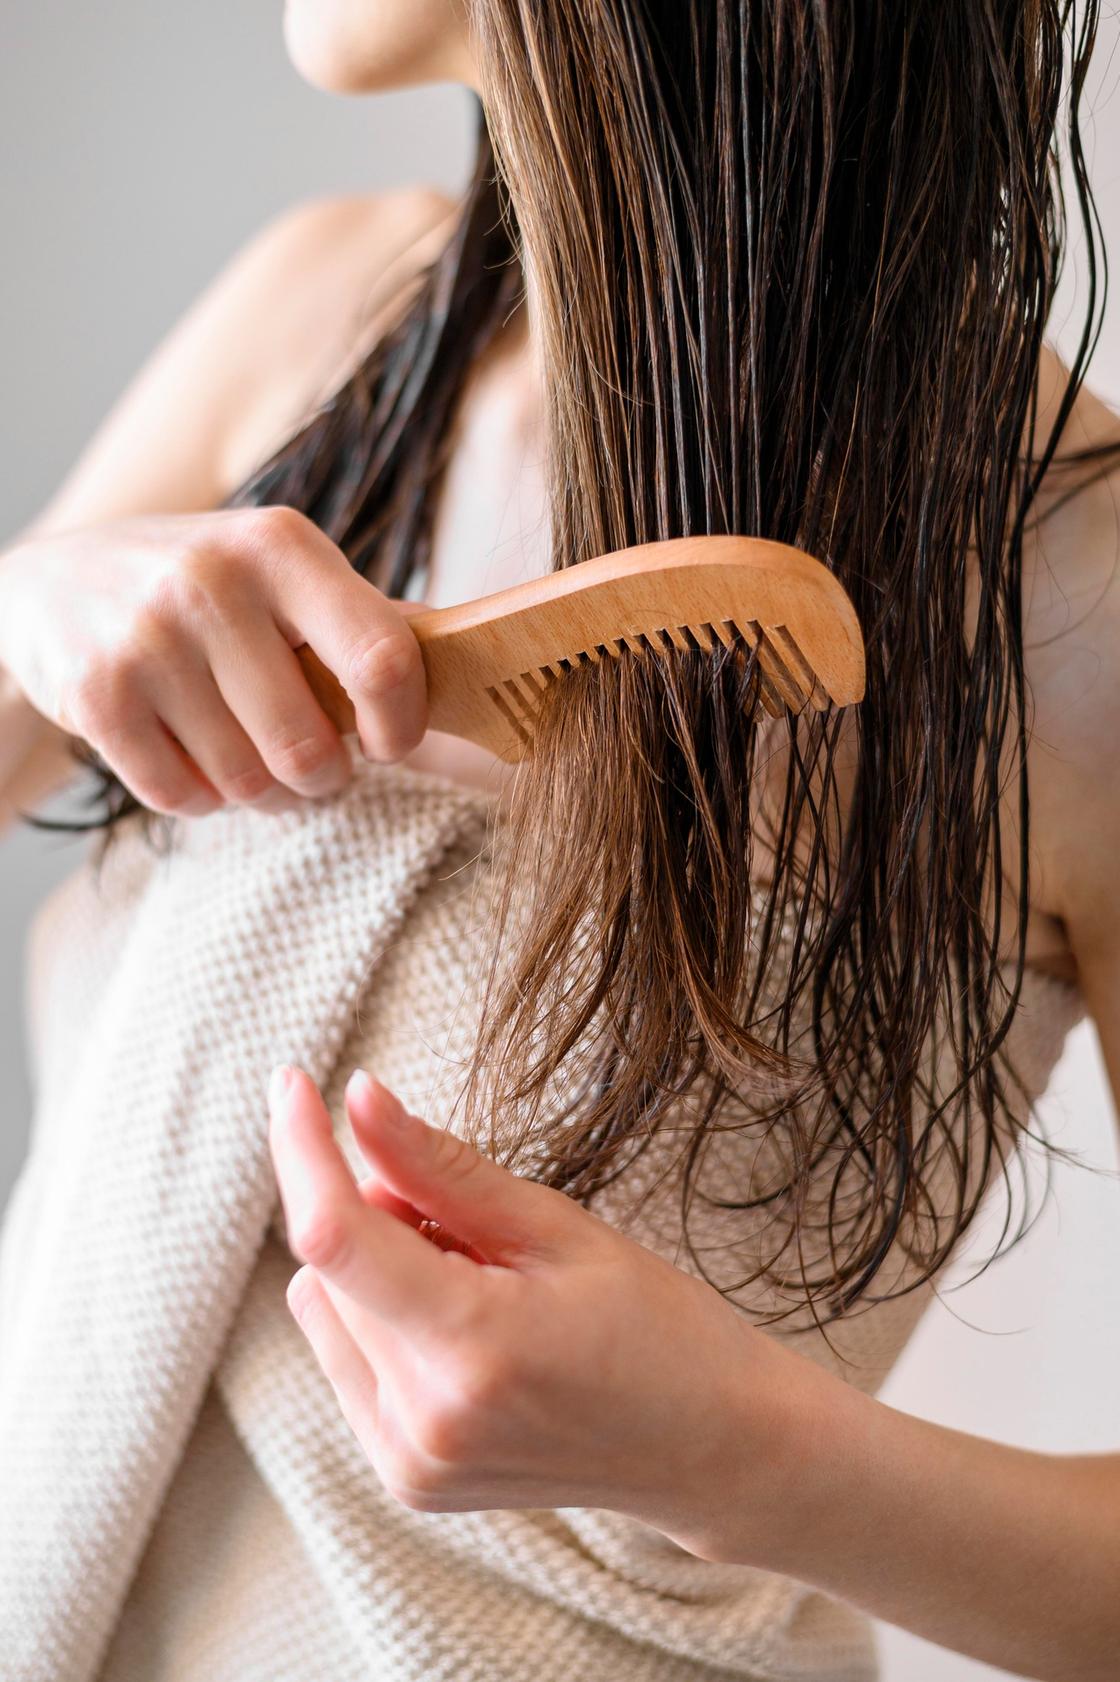 Девушка расчесывает длинные волосы деревянным гребнем с редкими зубьями